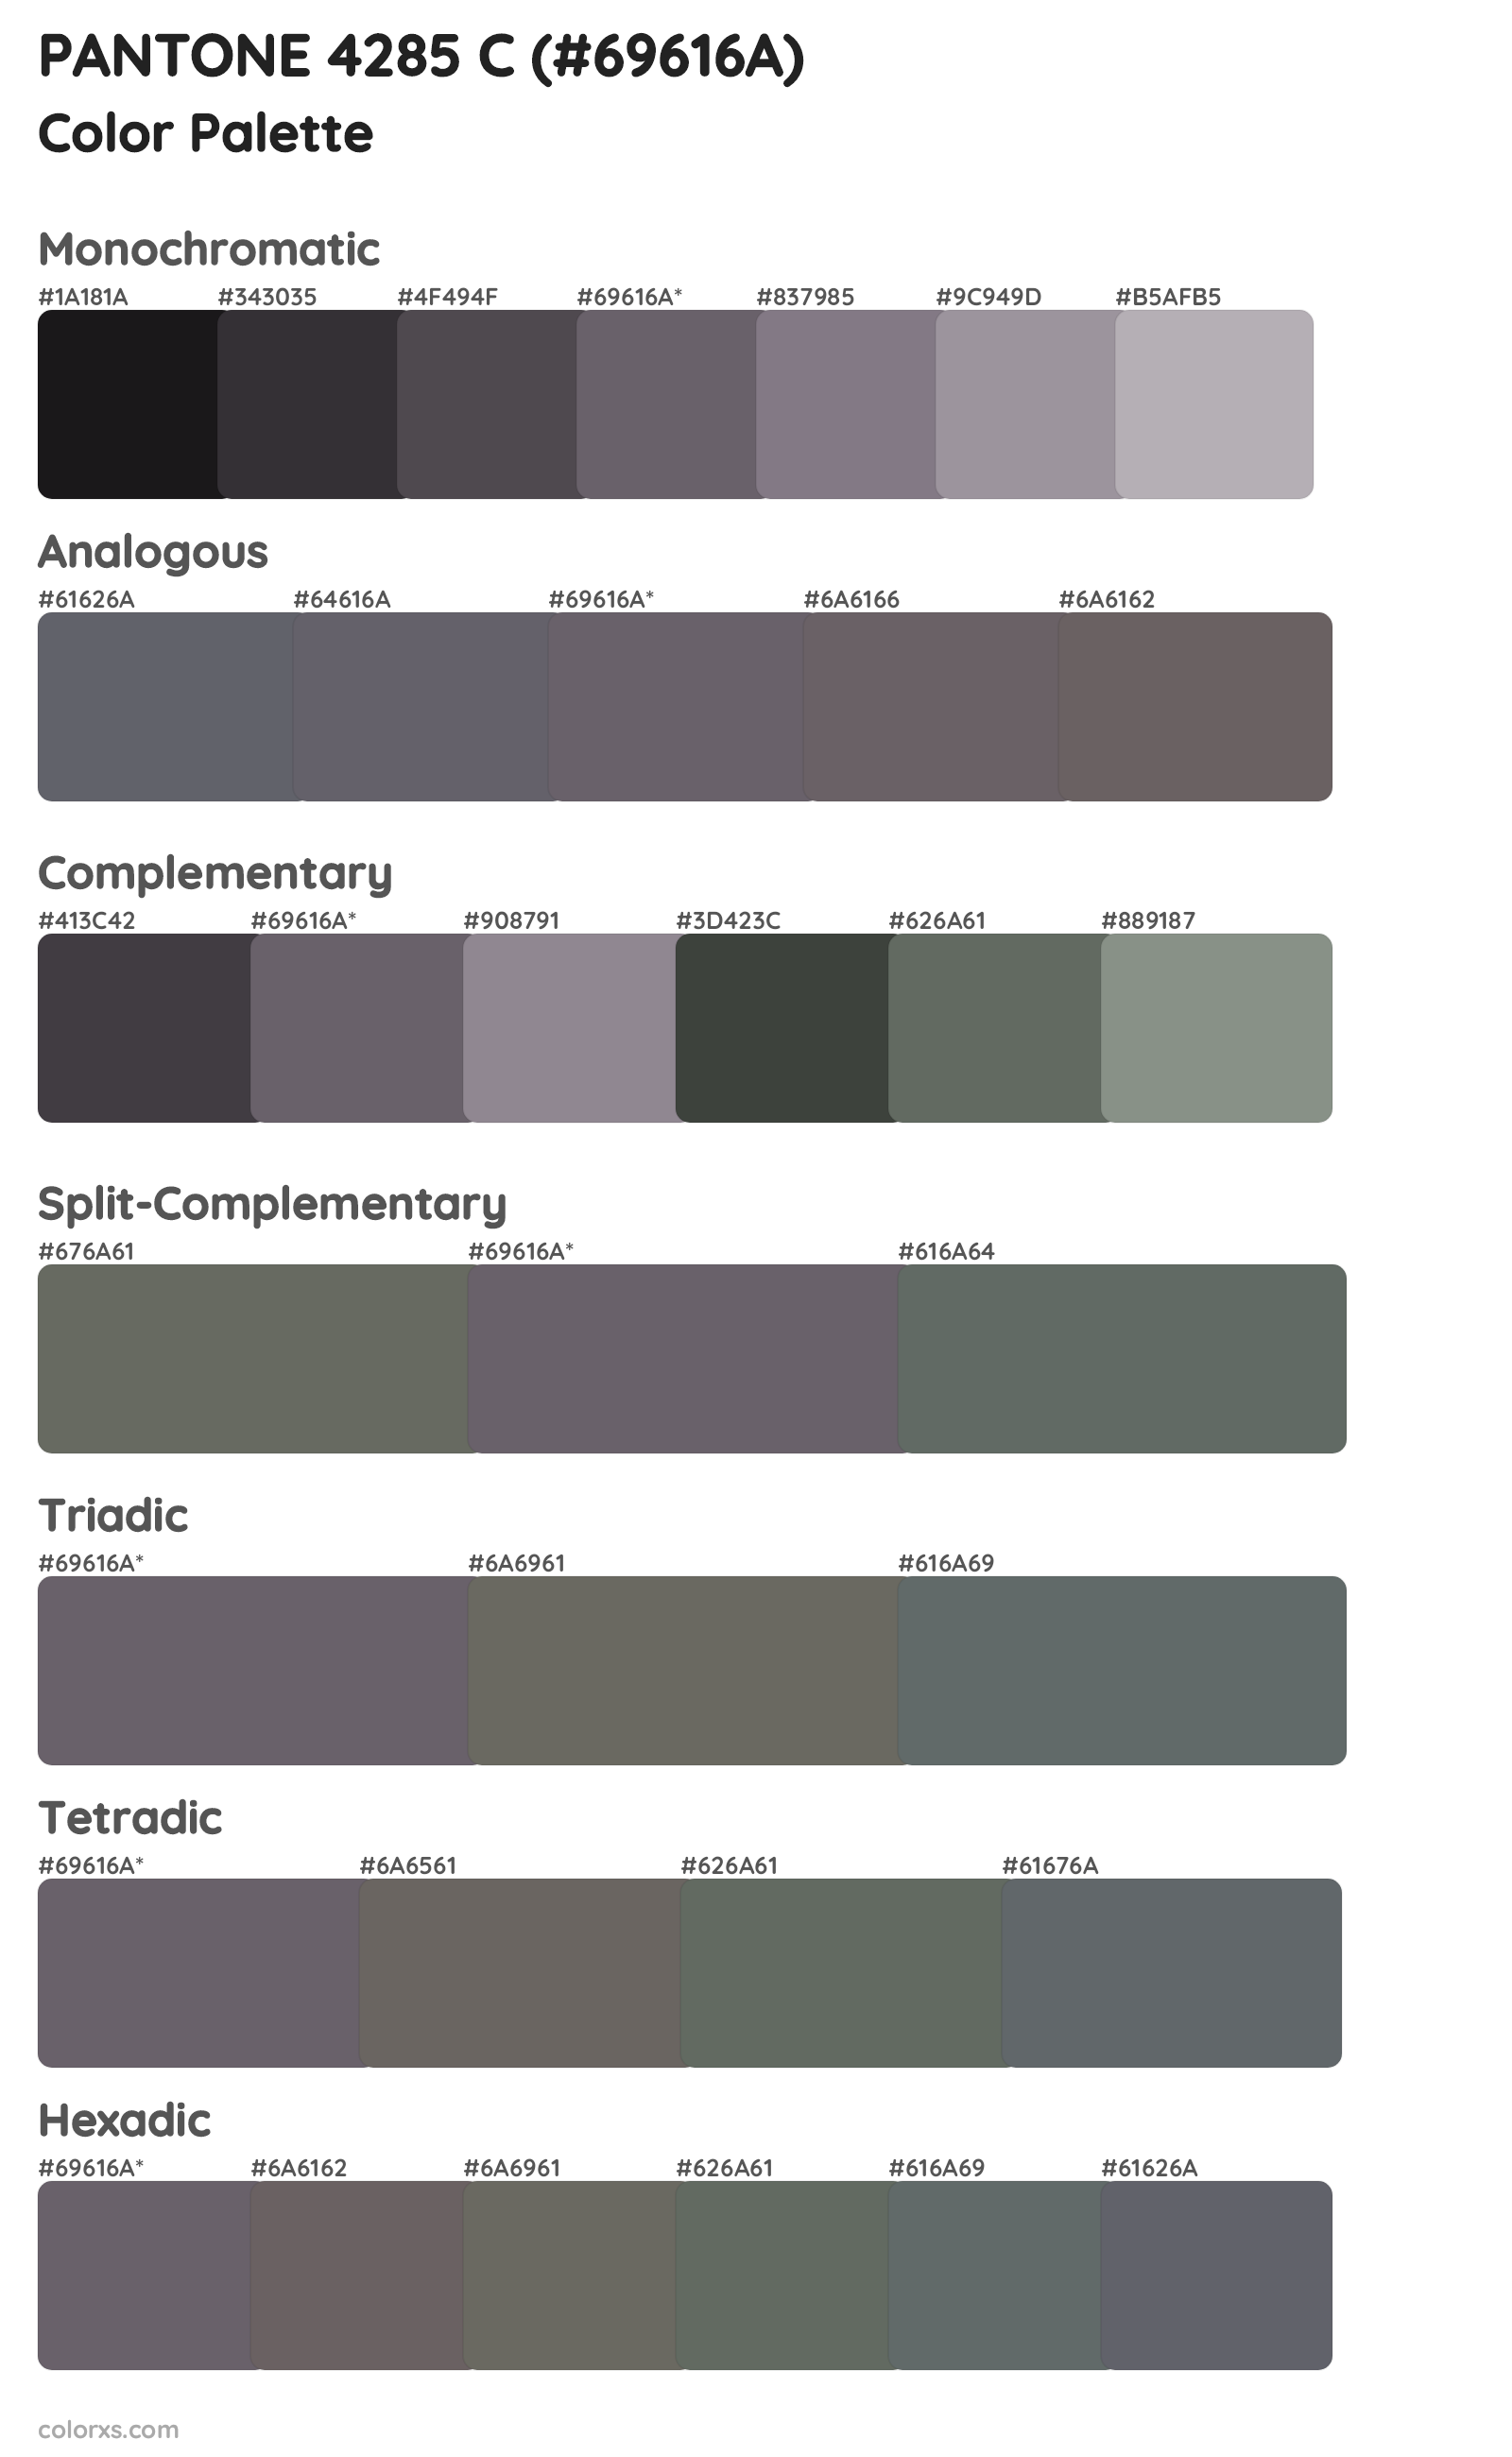 PANTONE 4285 C Color Scheme Palettes